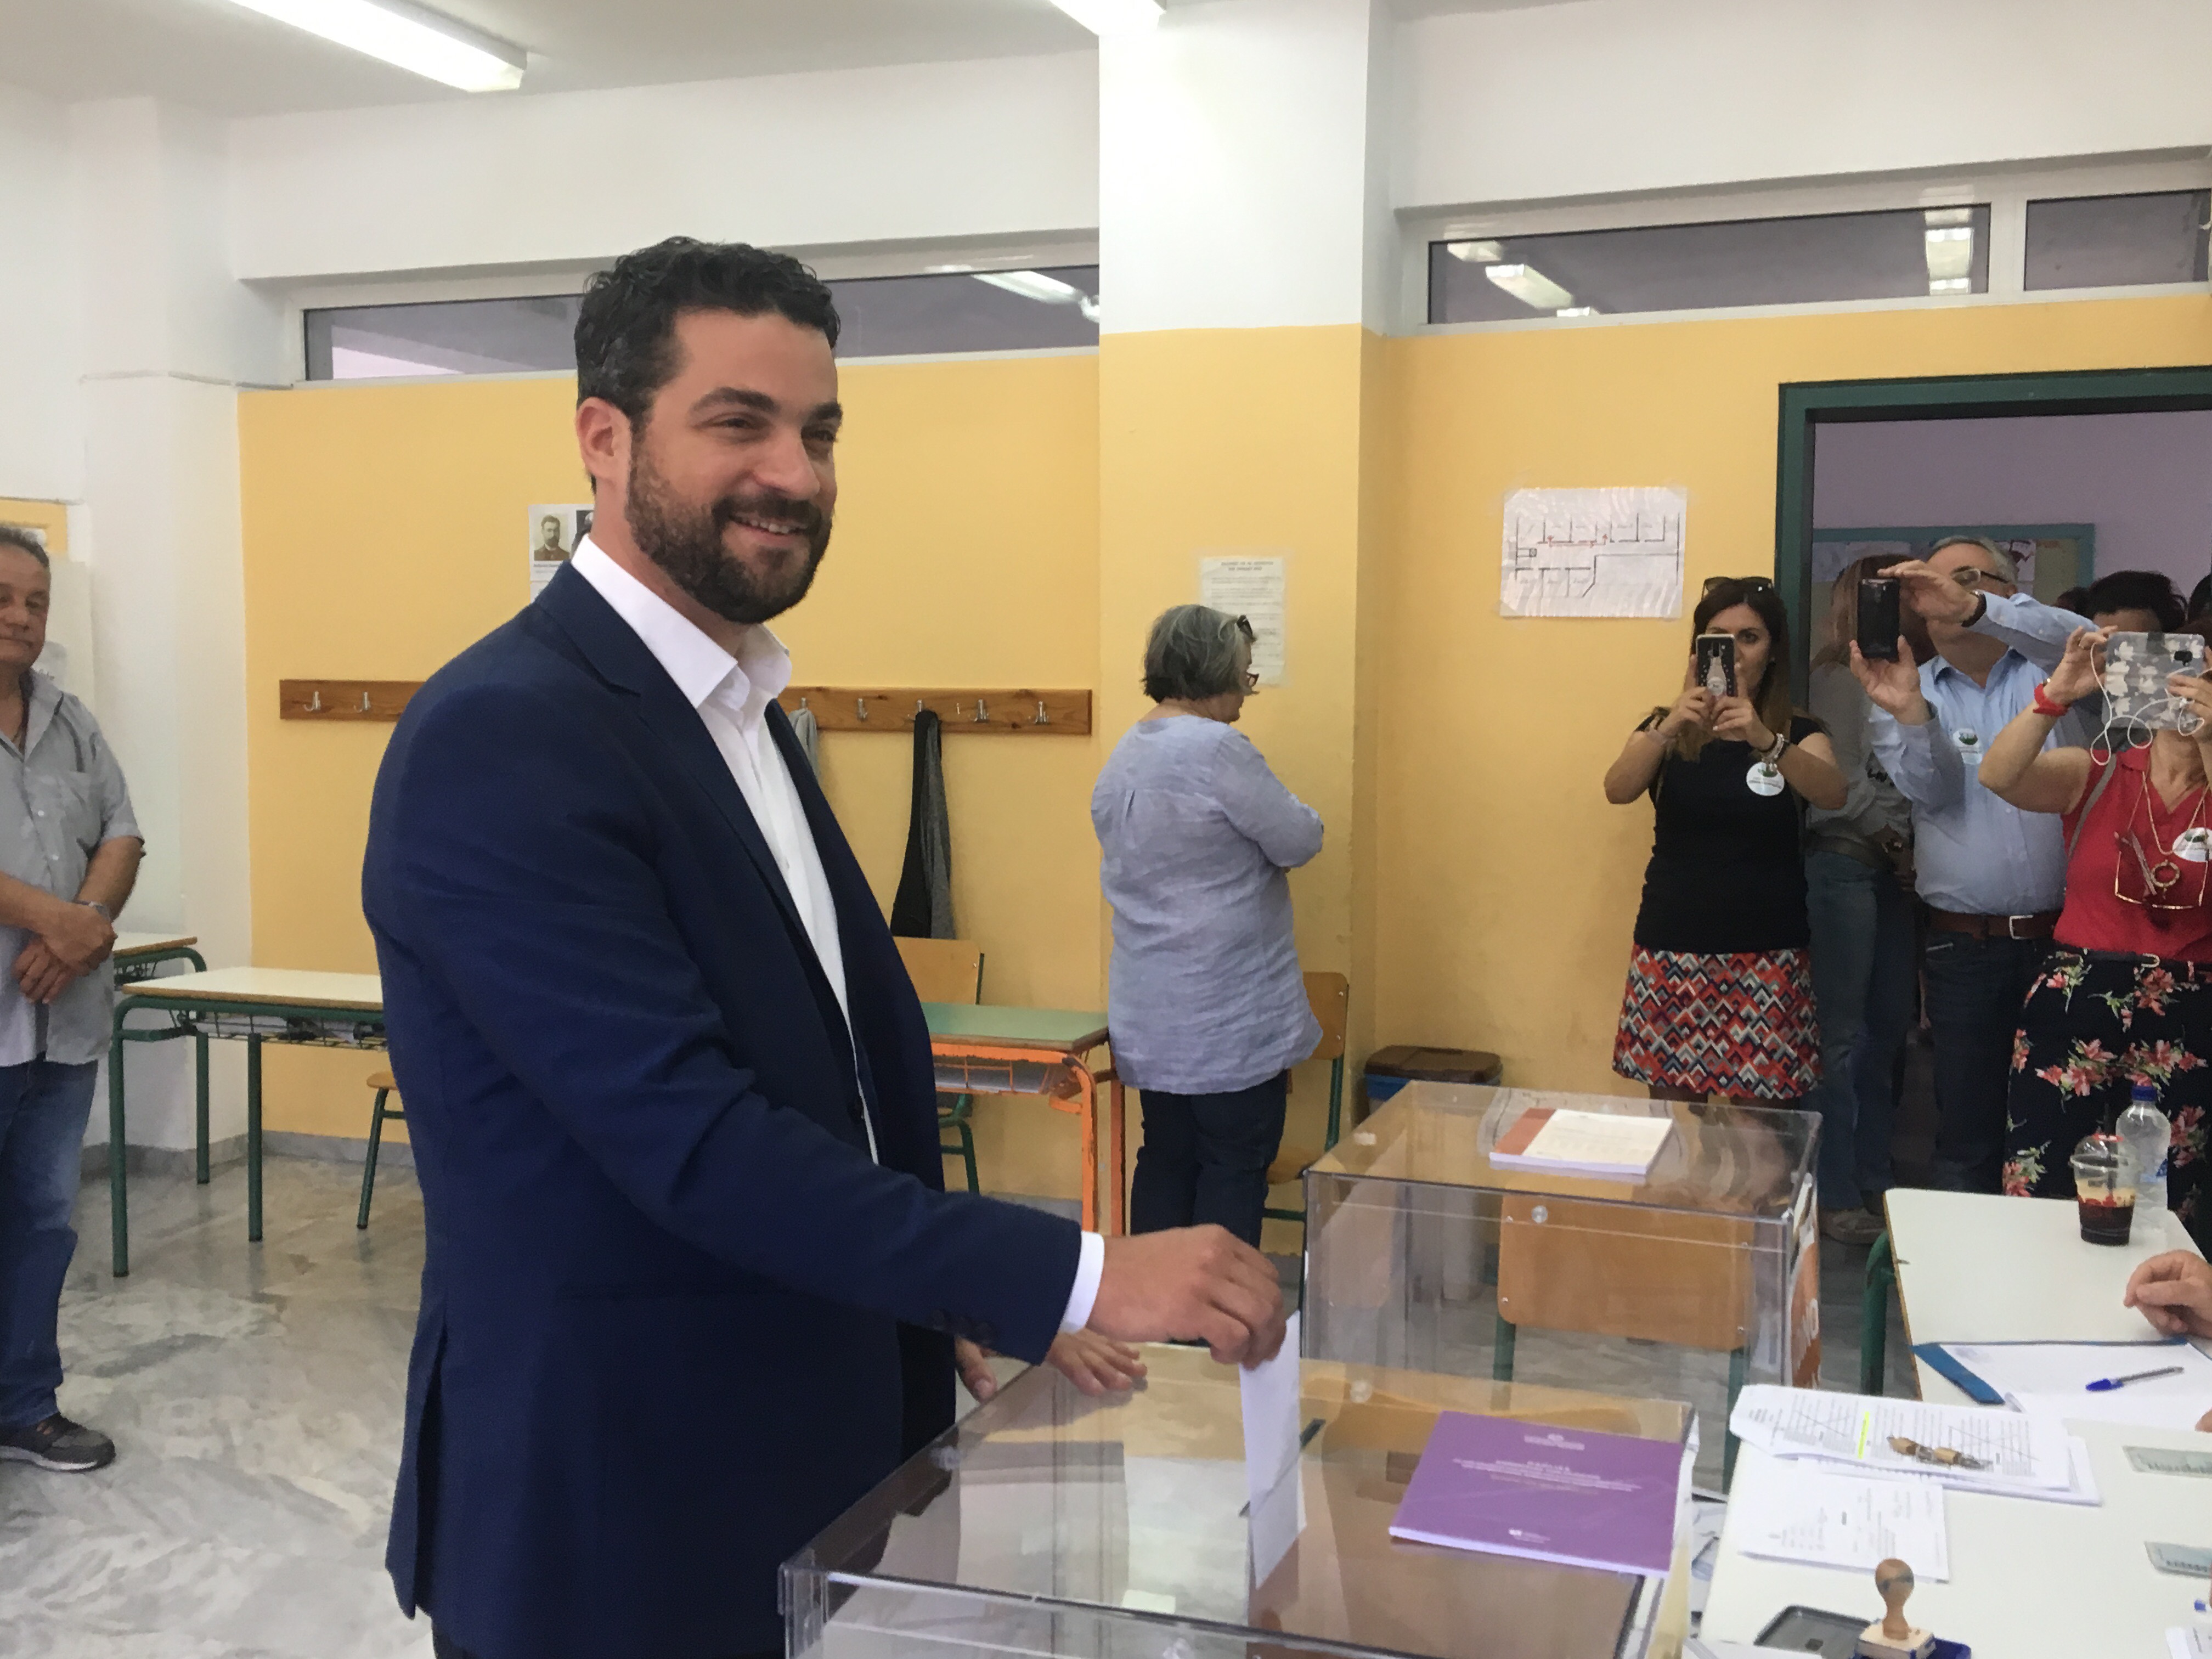 Π.Σημανδηράκης: Από σήμερα ξεκινά μια άλλη ημέρα για το δήμο Χανίων